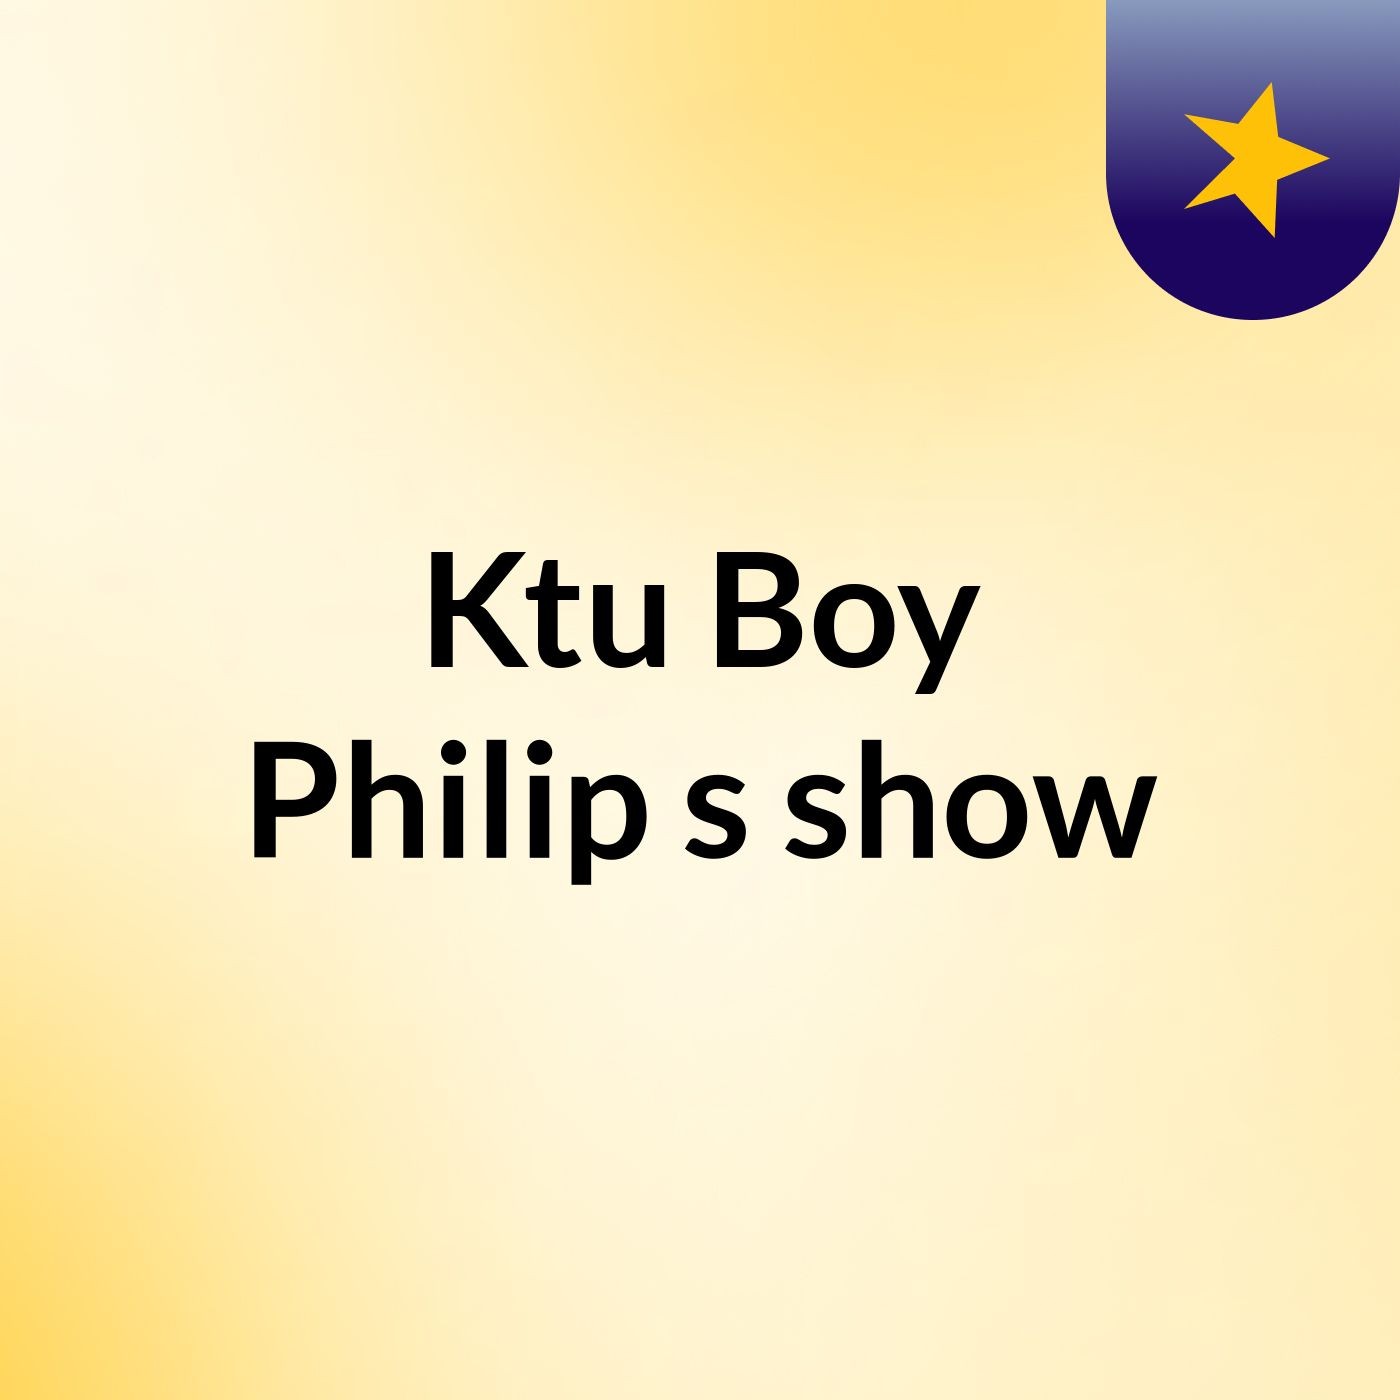 Ktu Boy Philip's show